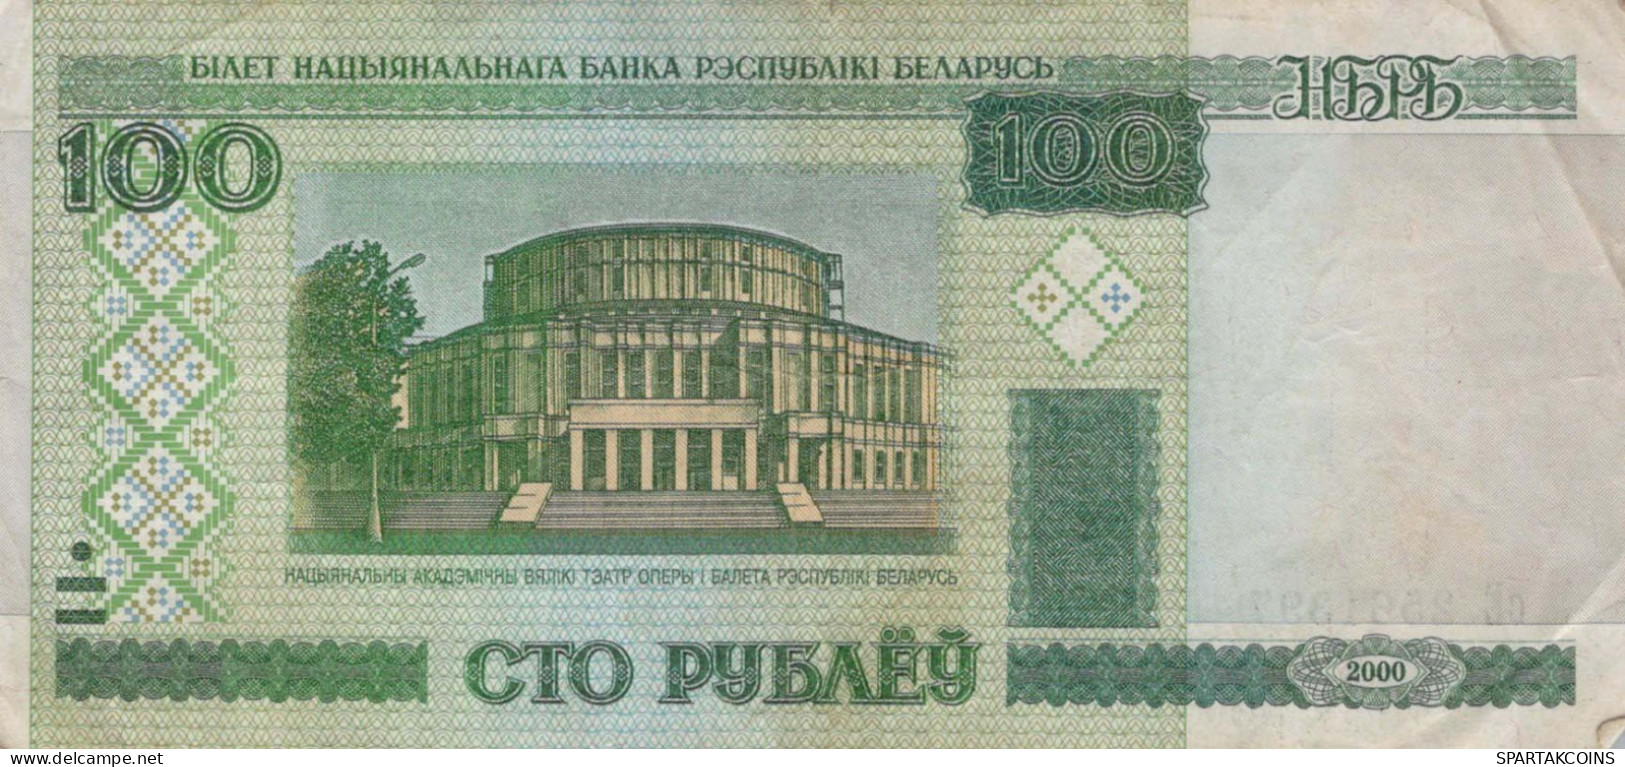 100 RUBLES 2000 BELARUS Papiergeld Banknote #PK608 - Lokale Ausgaben